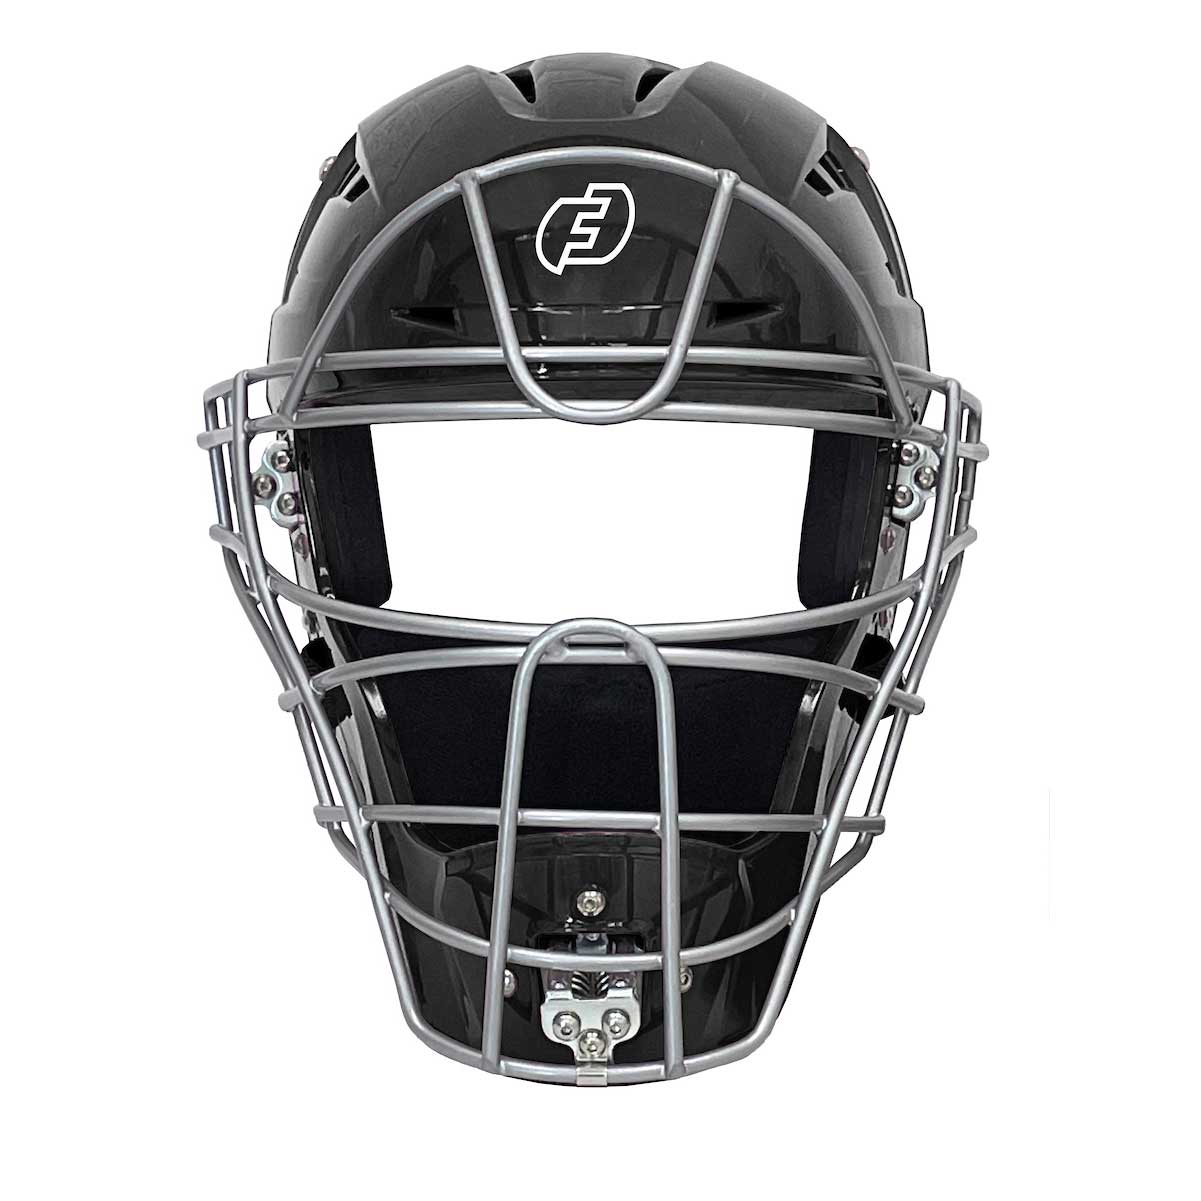 Force3 Hockey Style Defender Mask